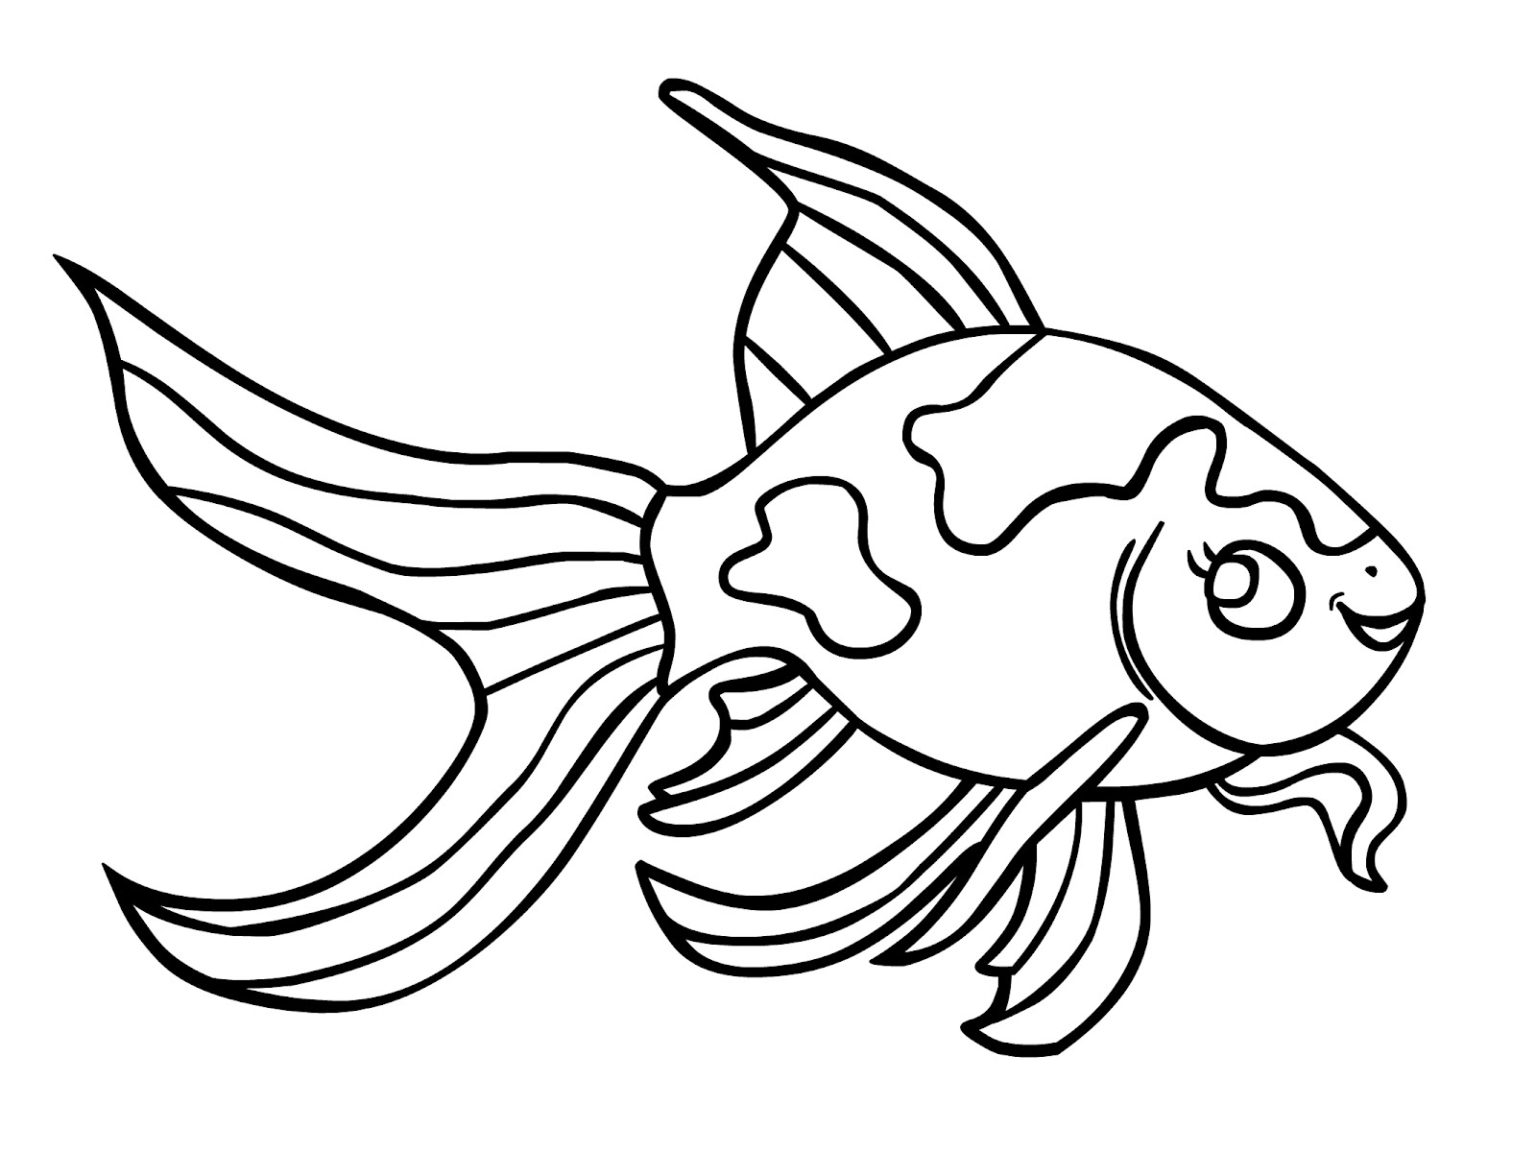 Hình vẽ cá vàng là một trong những chủ đề được ưa thích trong vẽ tranh. Không những đơn giản mà còn rất đáng yêu và dễ thương. Nếu bạn đang tìm kiếm cảm hứng vẽ tranh, hãy đến với hình ảnh liên quan để có thêm nhiều ý tưởng và kỹ thuật hữu ích.